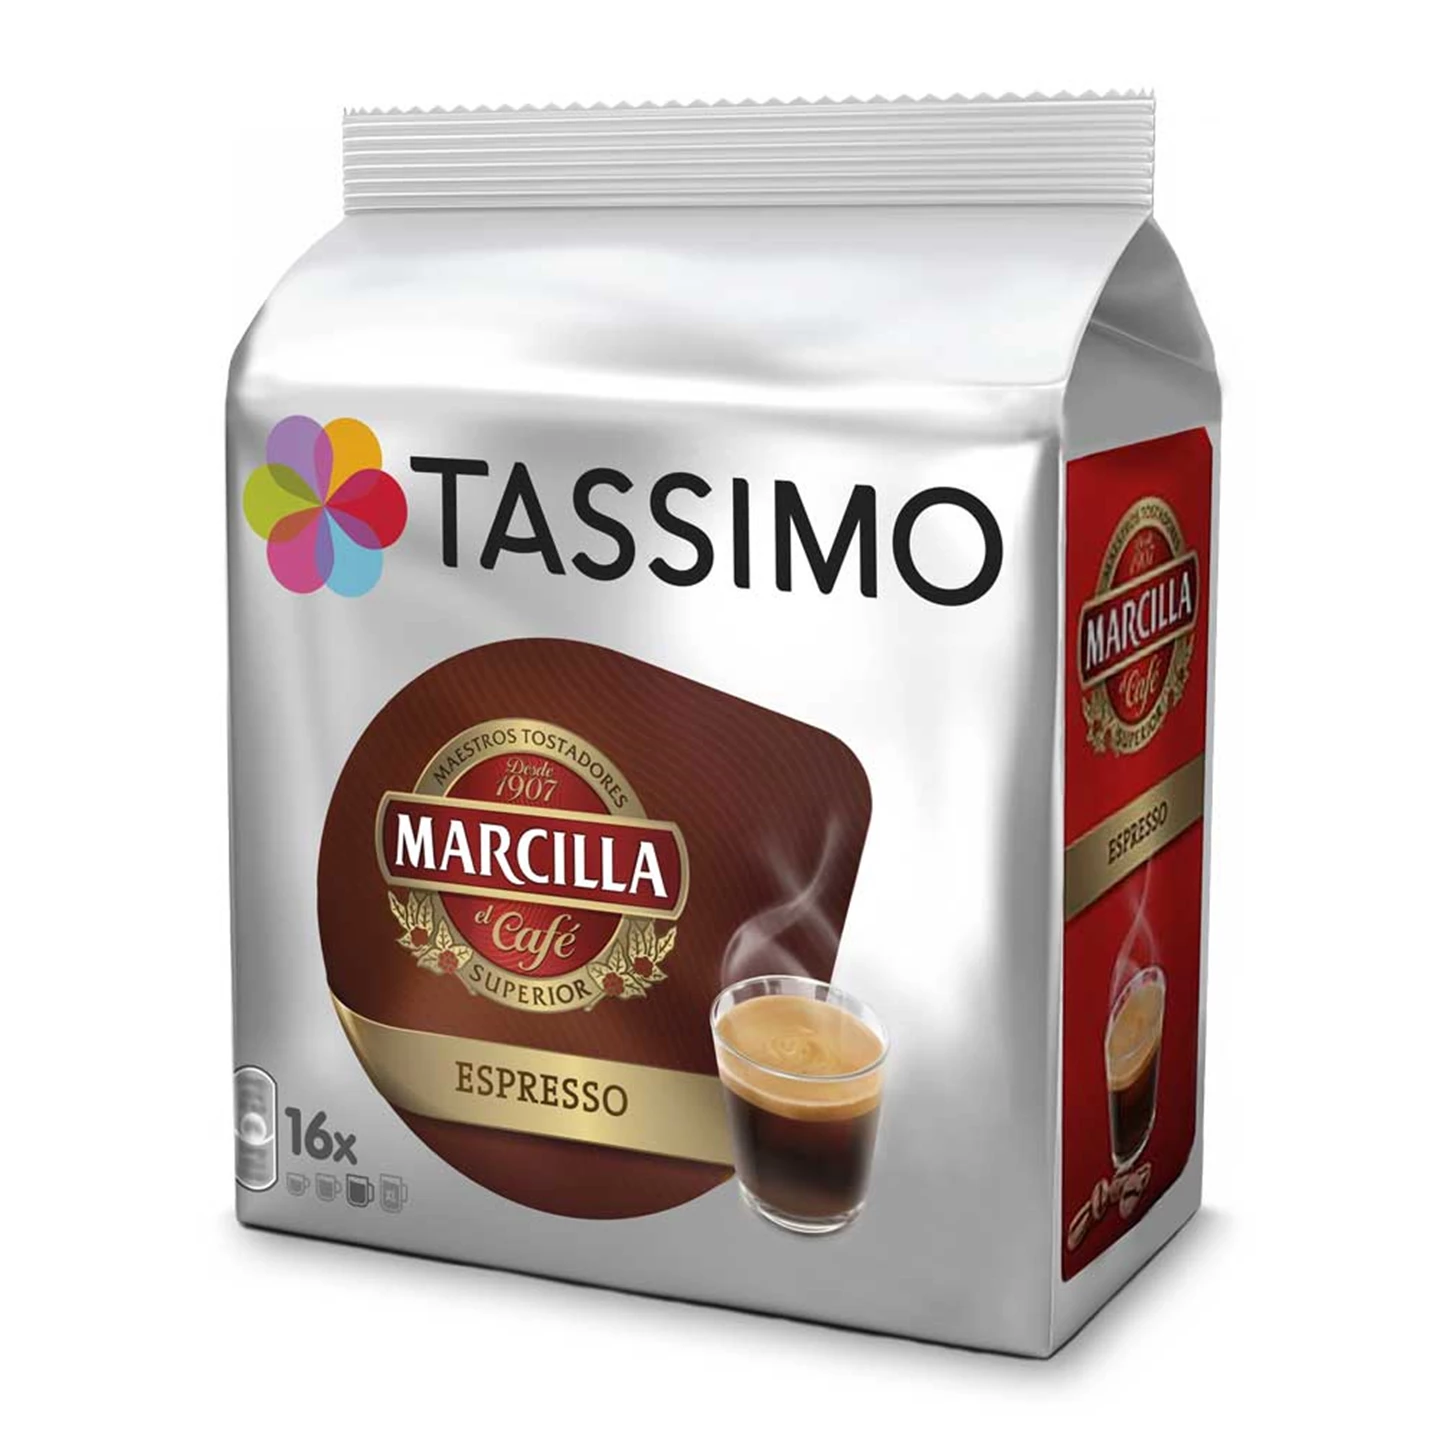 Marcilla café Colombia